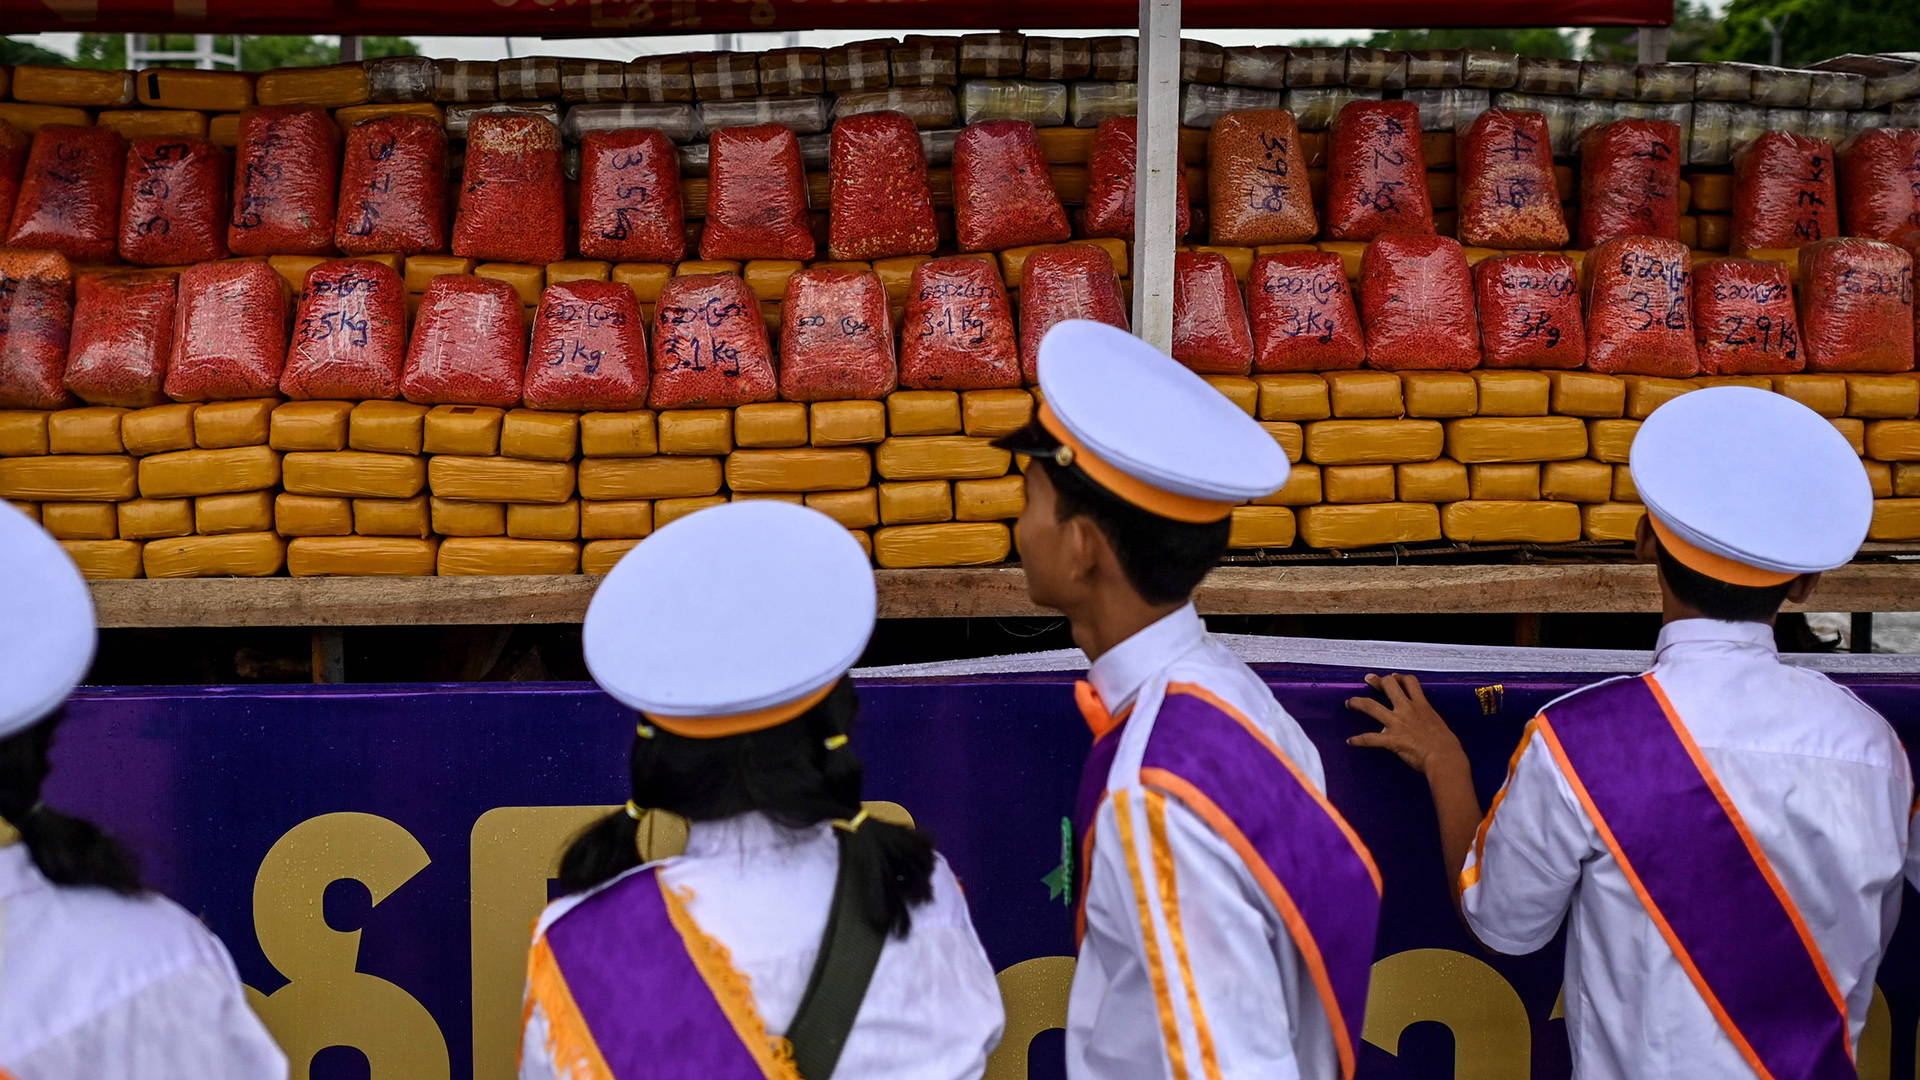 Menschen in Uniform betrachten einen Stapel Pakete. | AFP